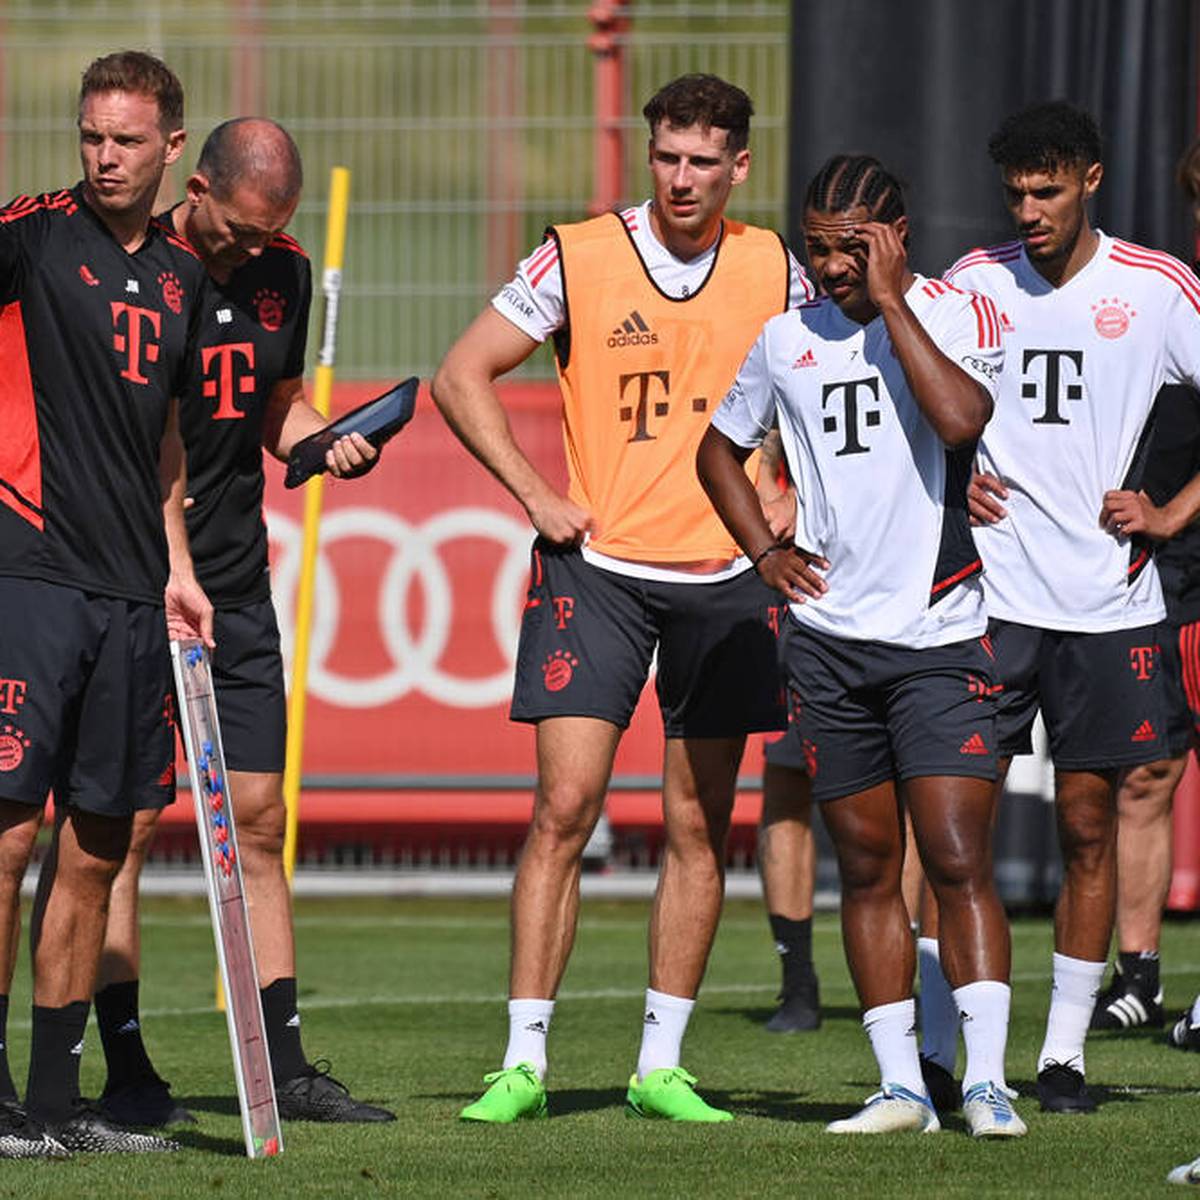 Der FC Bayern reist am Samstag zum Top-Spiel nach Dortmund. Trainer Julian Nagelsmann sprach über das Wiedersehen mit Ex-Spieler Niklas Süle und die Ewartungen an den BVB. Die PK zum Nachlesen.